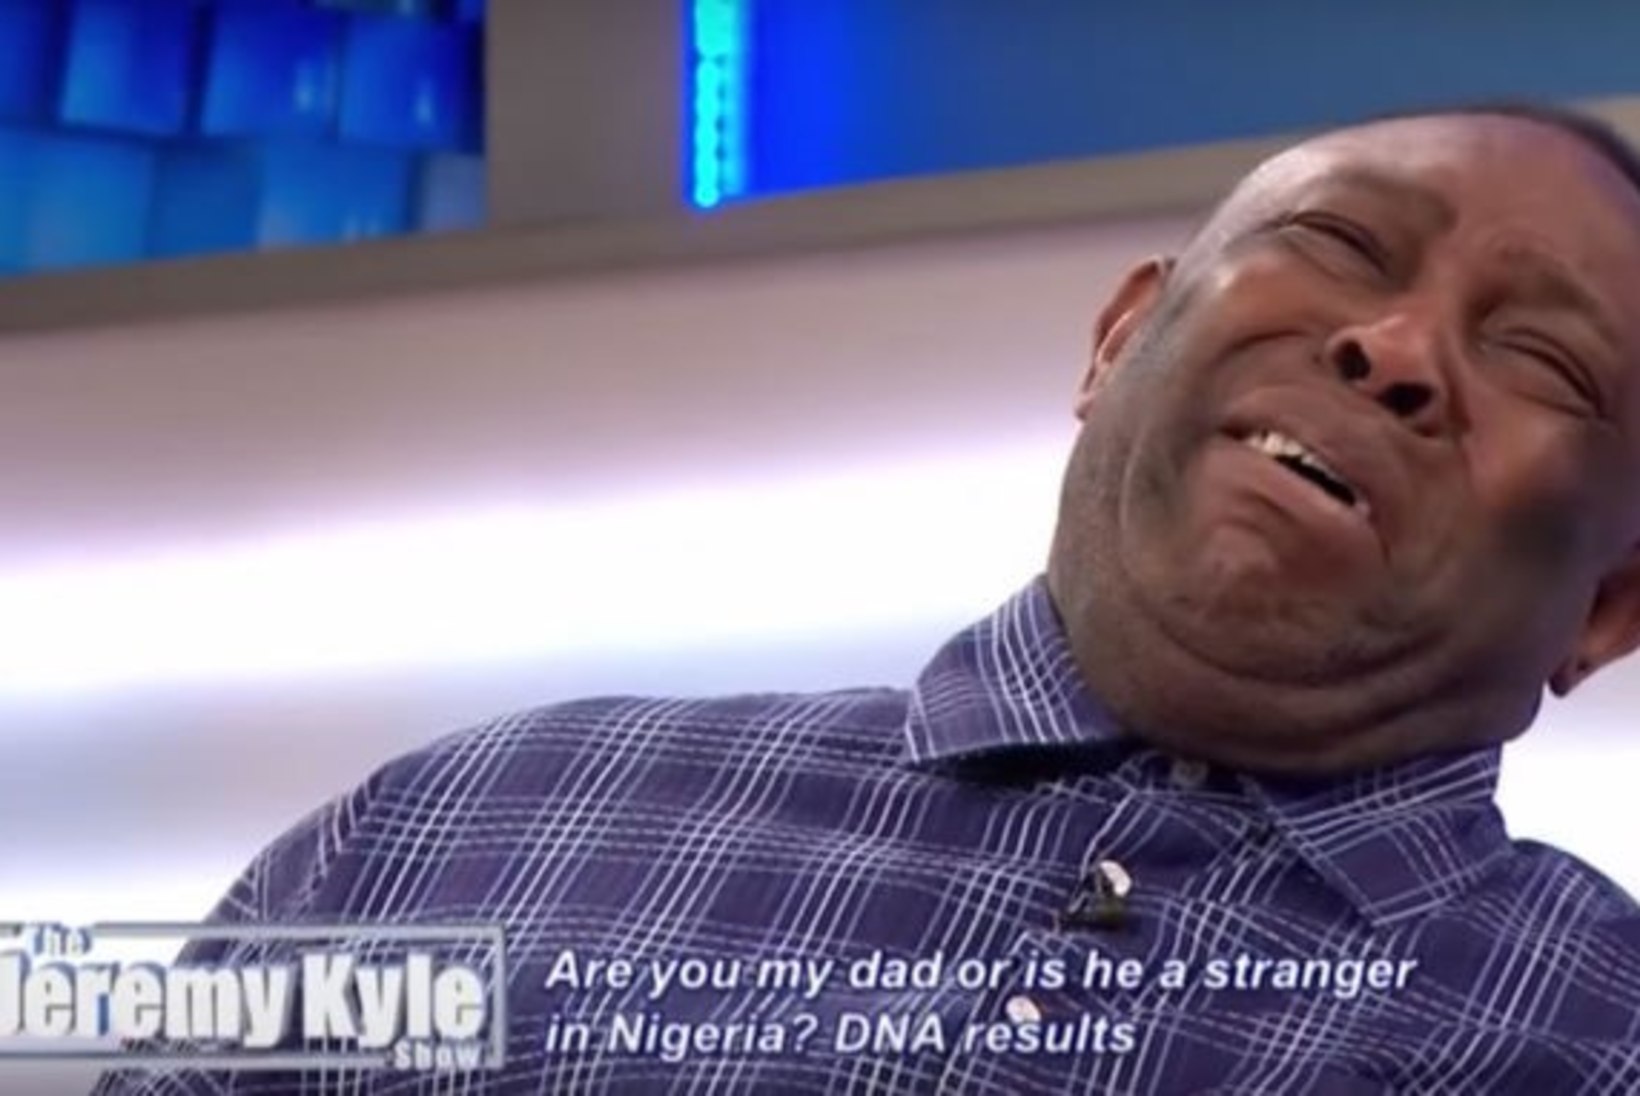 VIDEO | Kas see on kõige südantlõhestavam hetk televisioonis? Mees sai otse-eetris teada, et ta ei olegi oma poja bioloogiline isa!